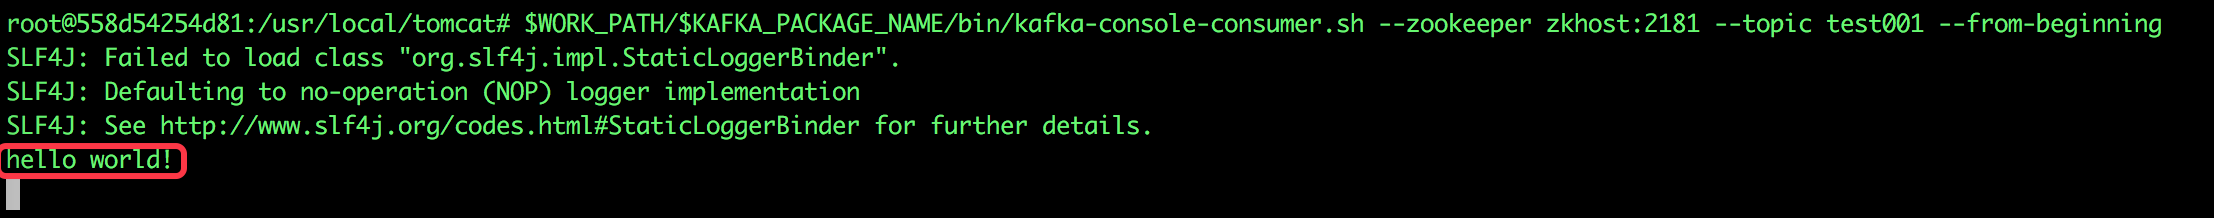 Docker下kafka的功能是什么